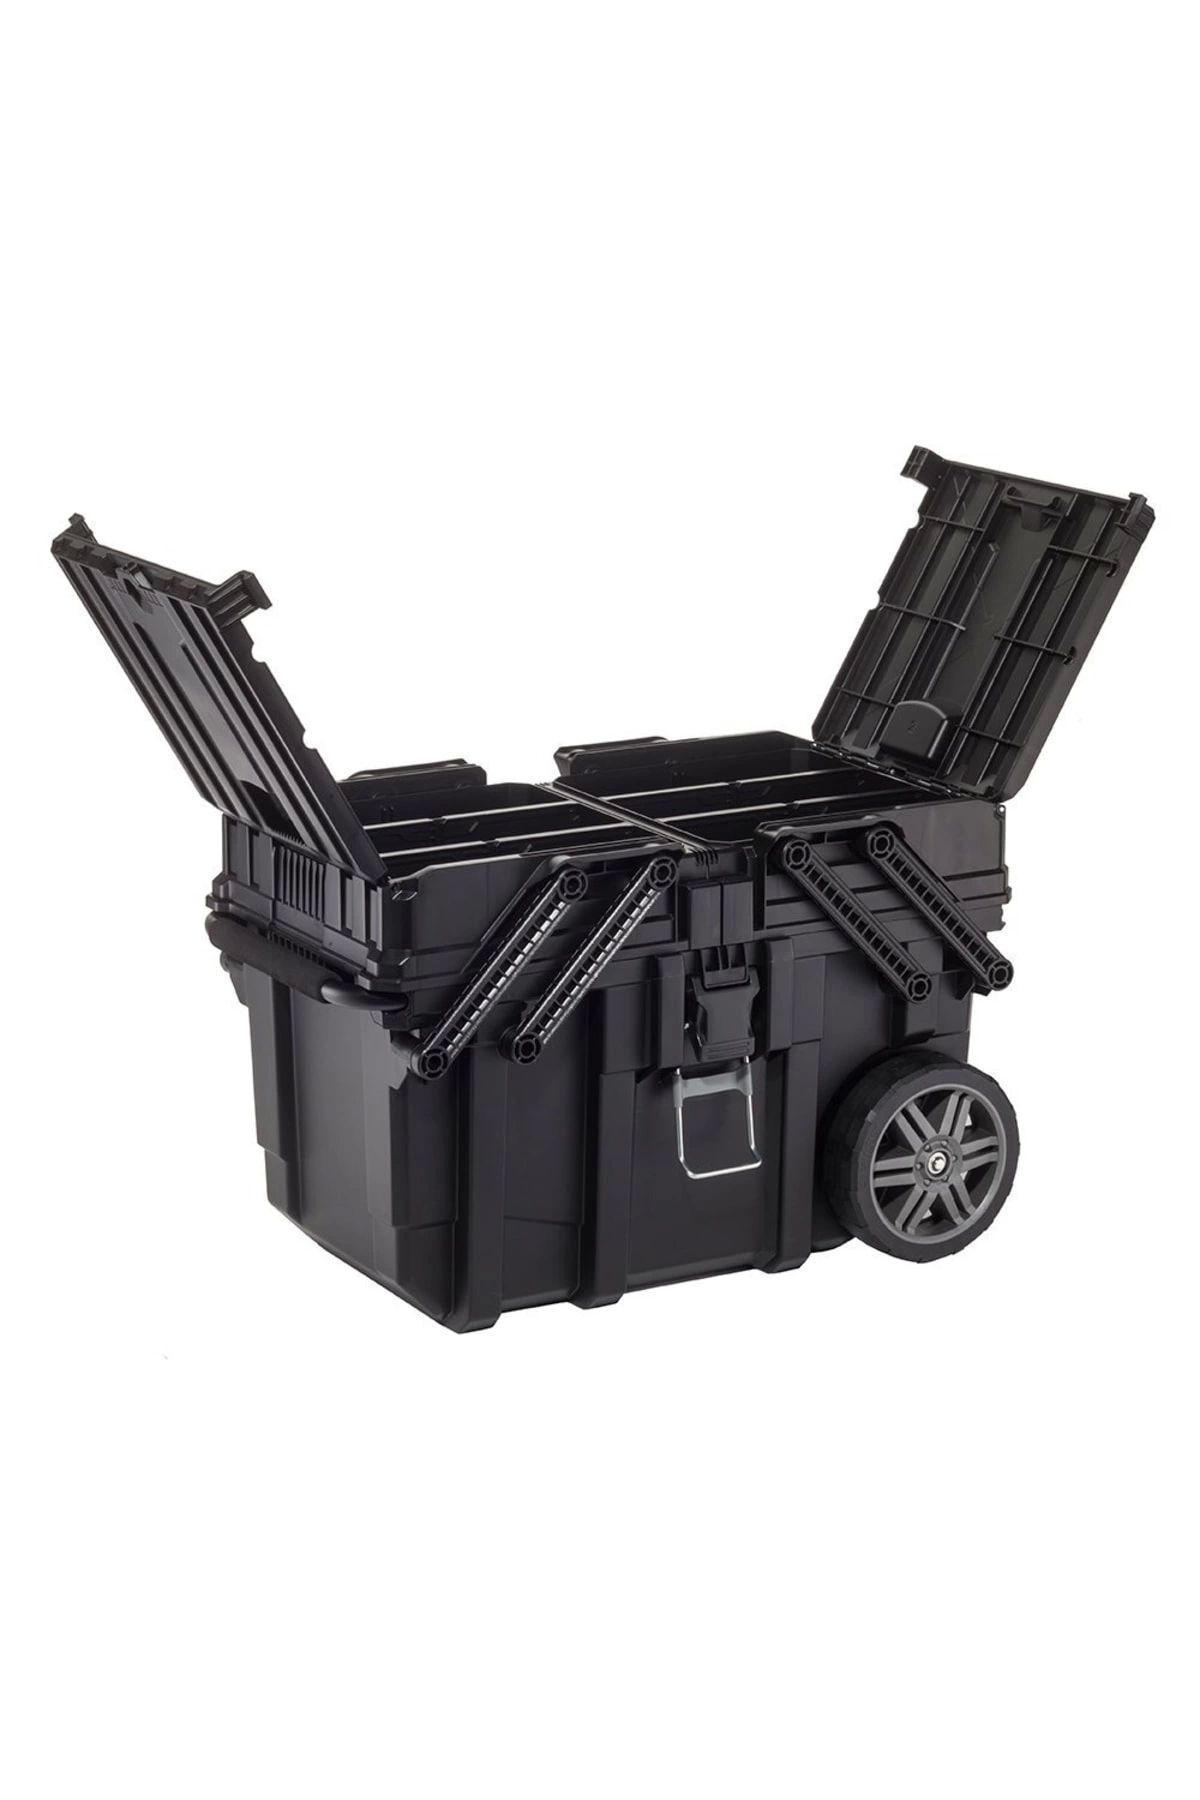 Keter 17203037 Cantilever Jobbox Konsol Kapak Tekerlekli Takım Sandığı